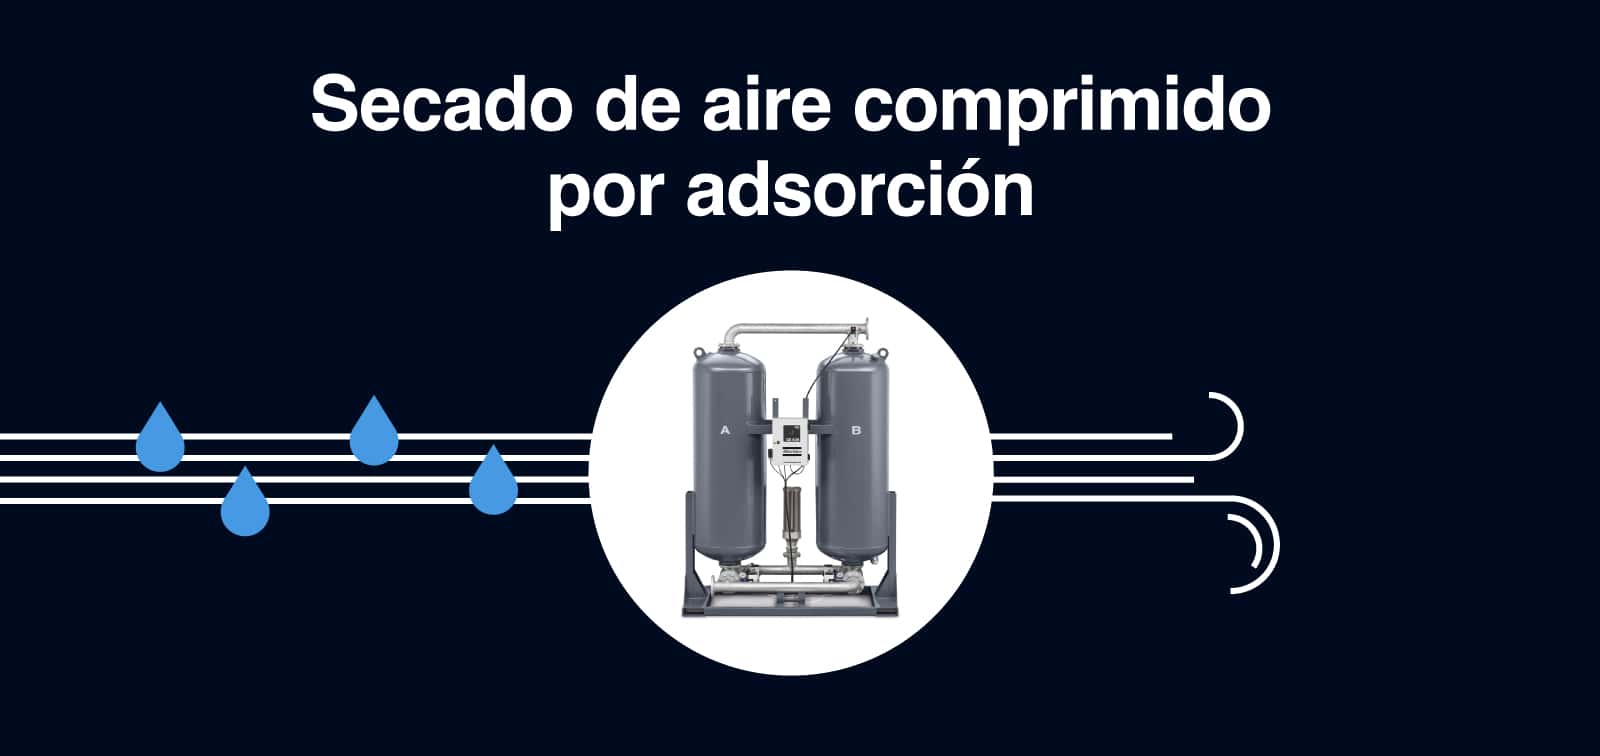 Secado-aire-comprimido-adsorcion-Atlas-Copco-MR-Peru